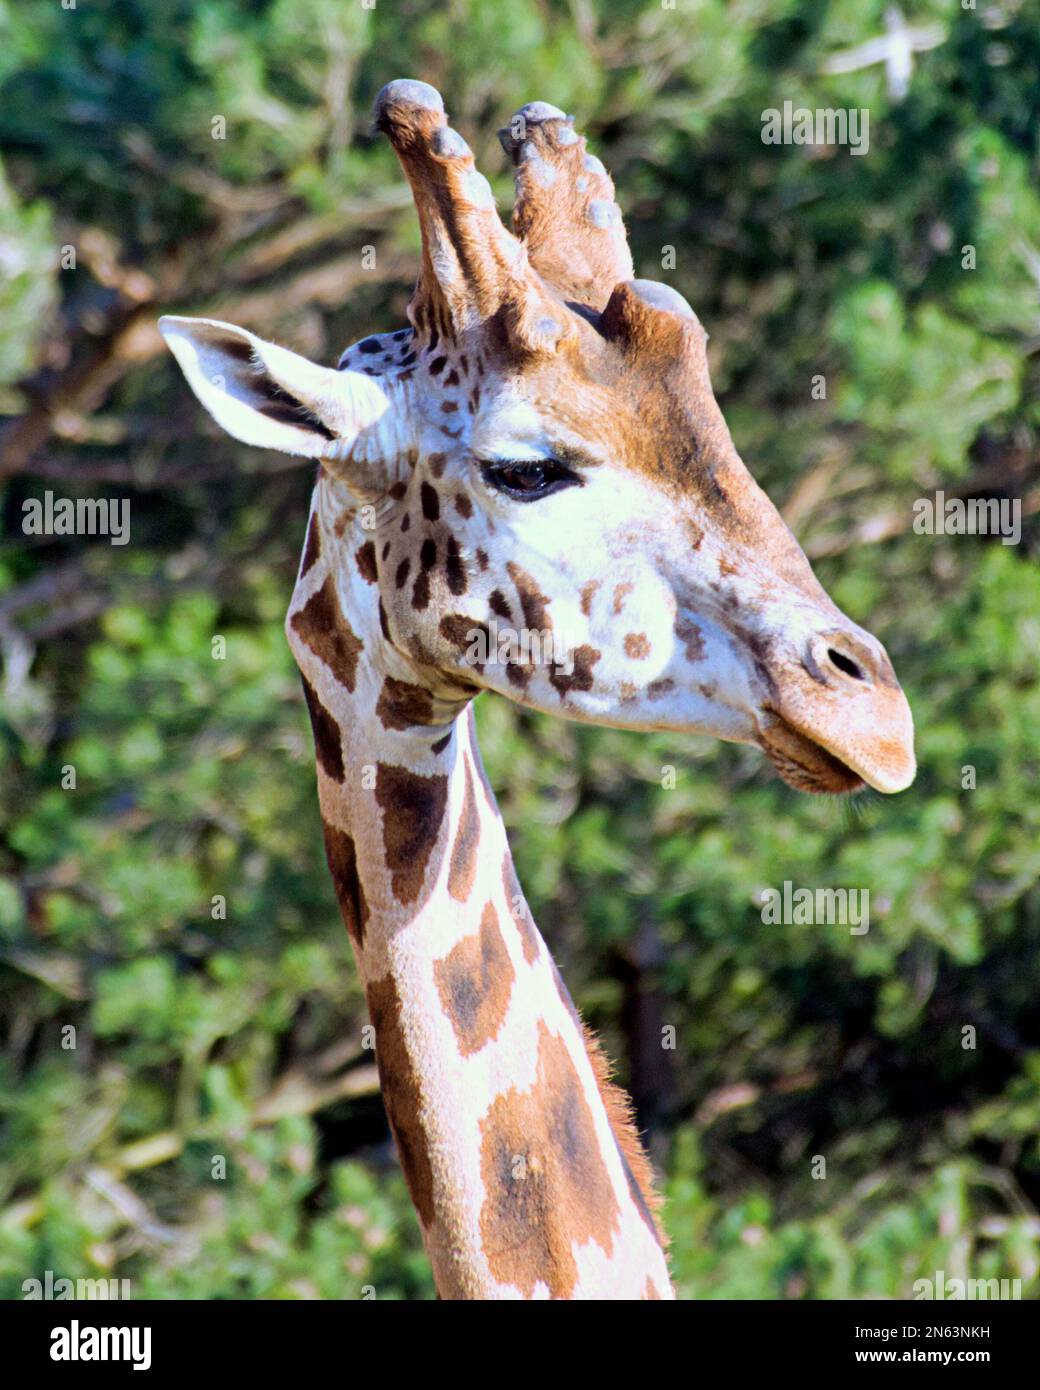 Funny giraffe genus Giraffe head shot Stock Photo